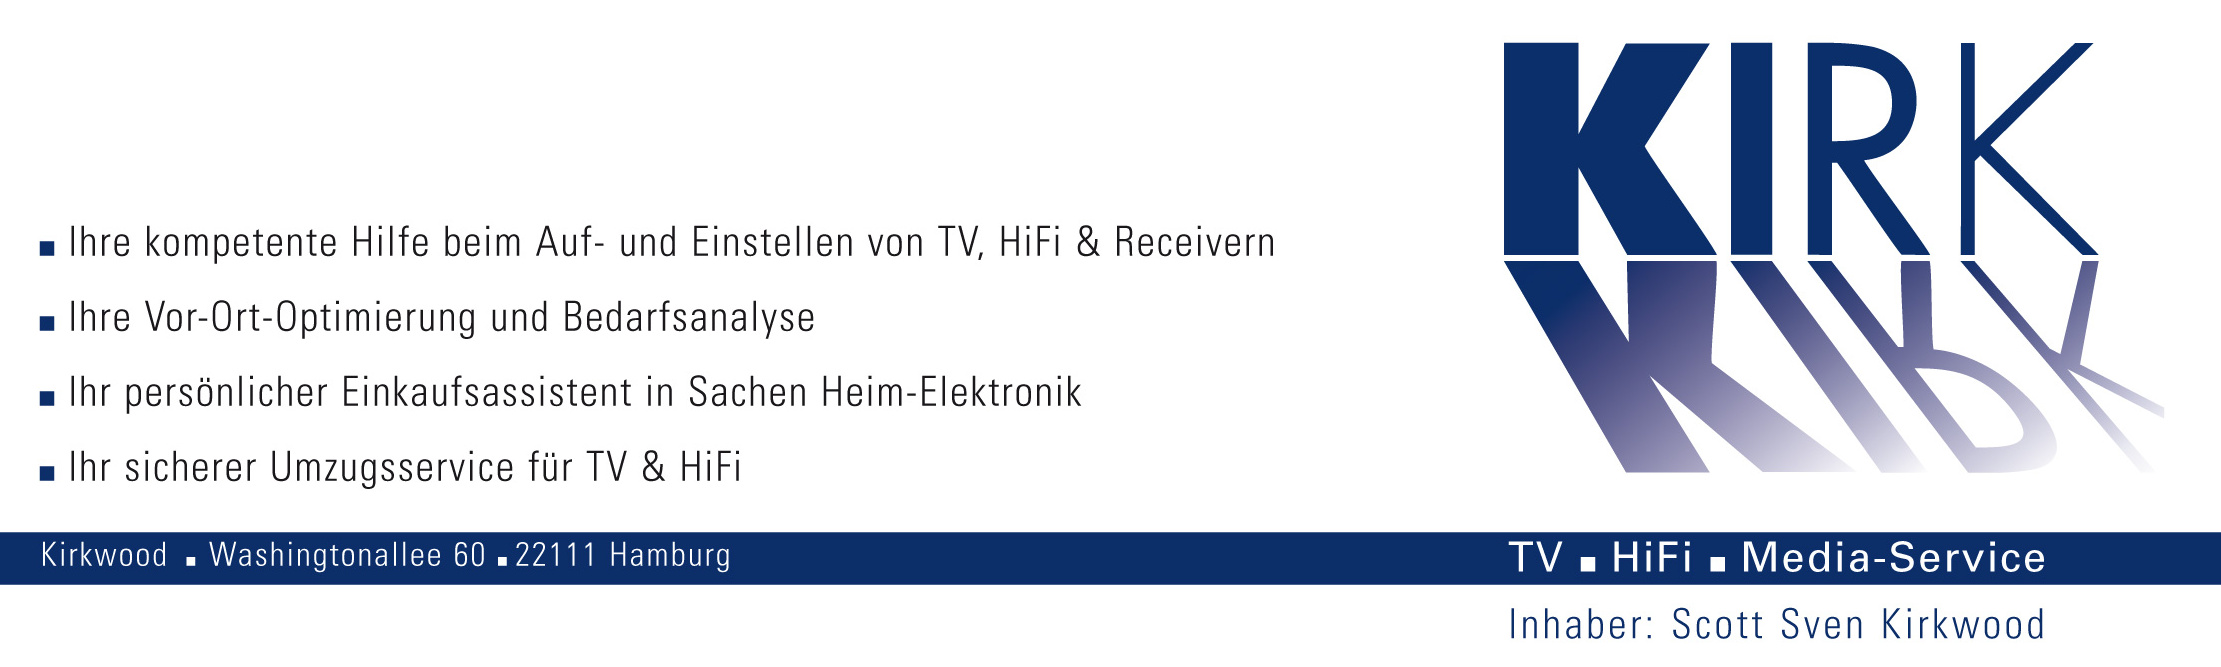 Bild 2 KIRK TV.HiFi.Media-Service in Hamburg